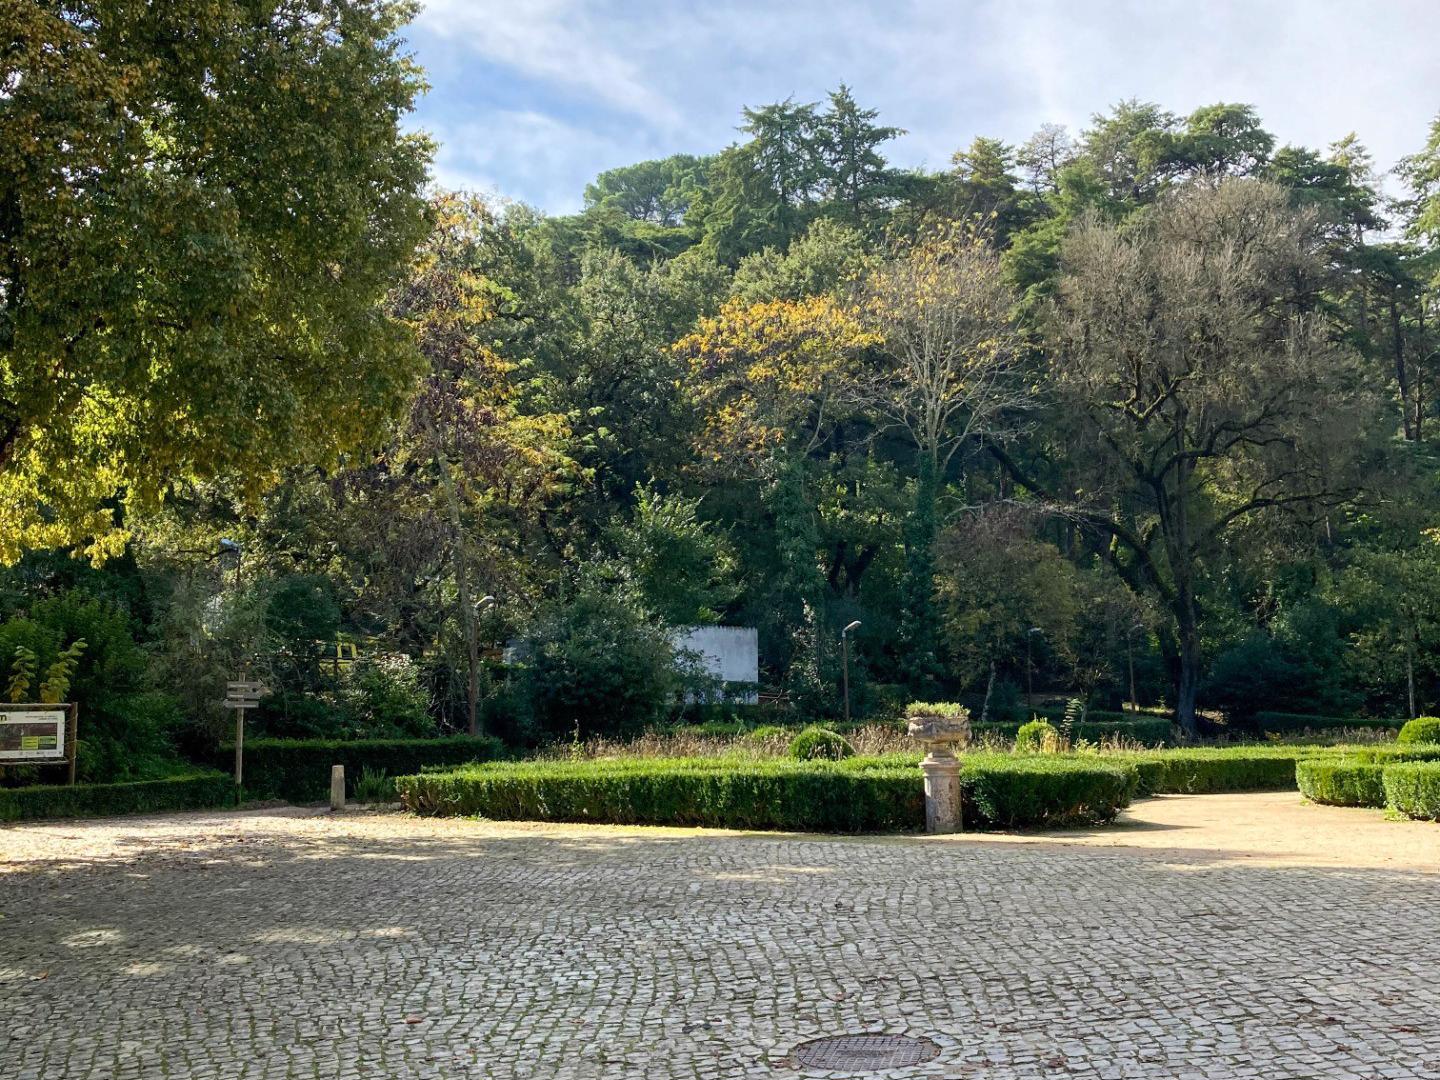 Recepção - A Cerca do Convento de Cristo, desde 1986 conhecida como Mata Nacional dos Sete Montes, é uma extensa área verde de jardim, parque e floresta, situada entre o Convento de Cristo e o centro da cidade.